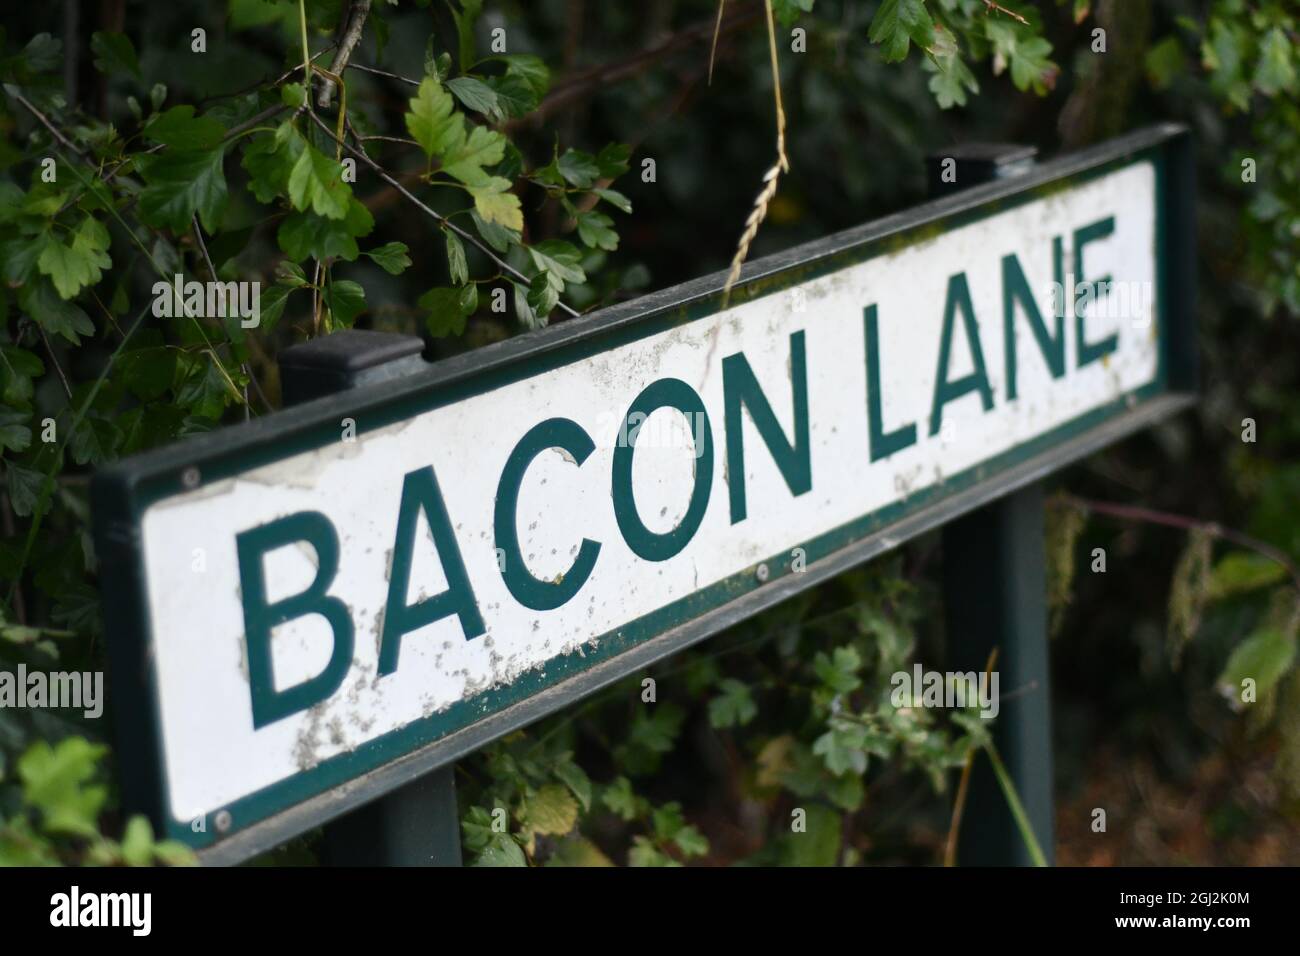 Una strada rurale inglese segno Bacon Lane con il hedgerow sullo sfondo Foto Stock